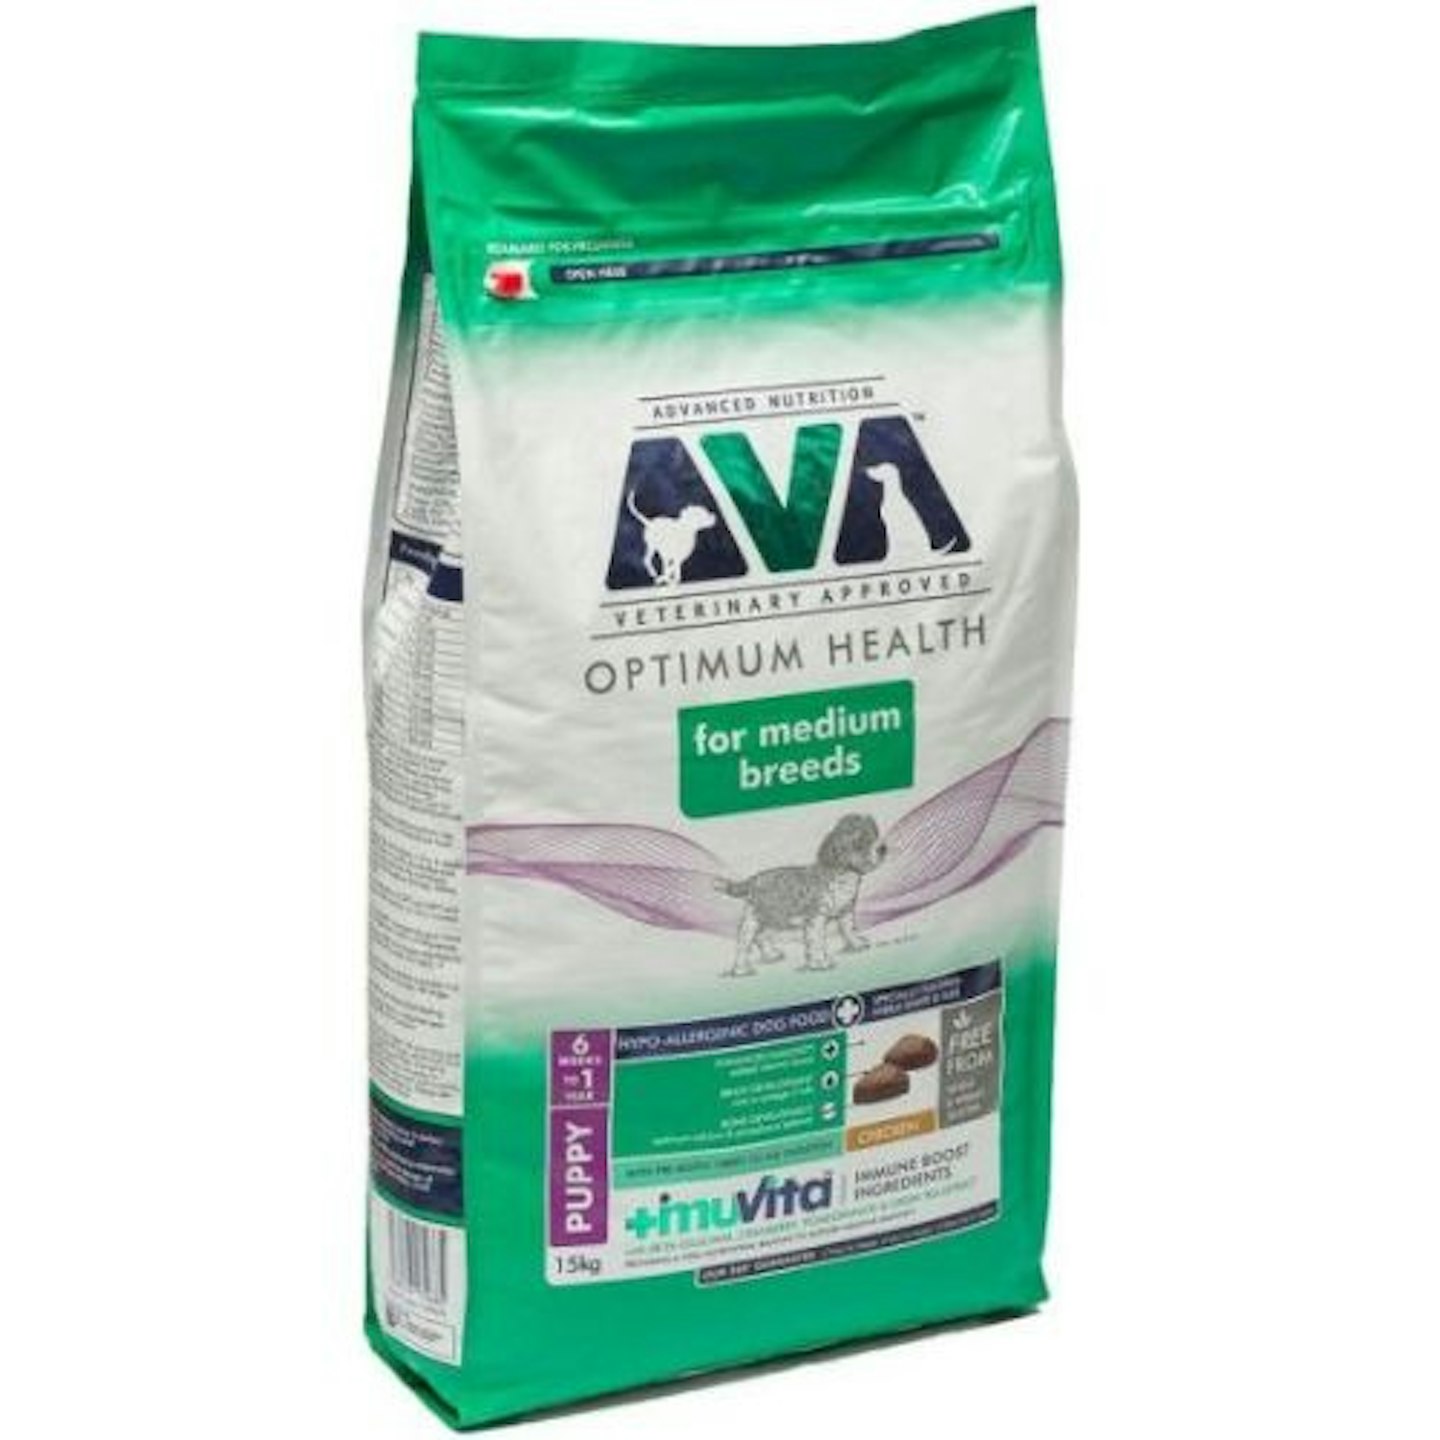 AVA, Optimum Health Medium Breed Dry Puppy Food Chicken - 15kg